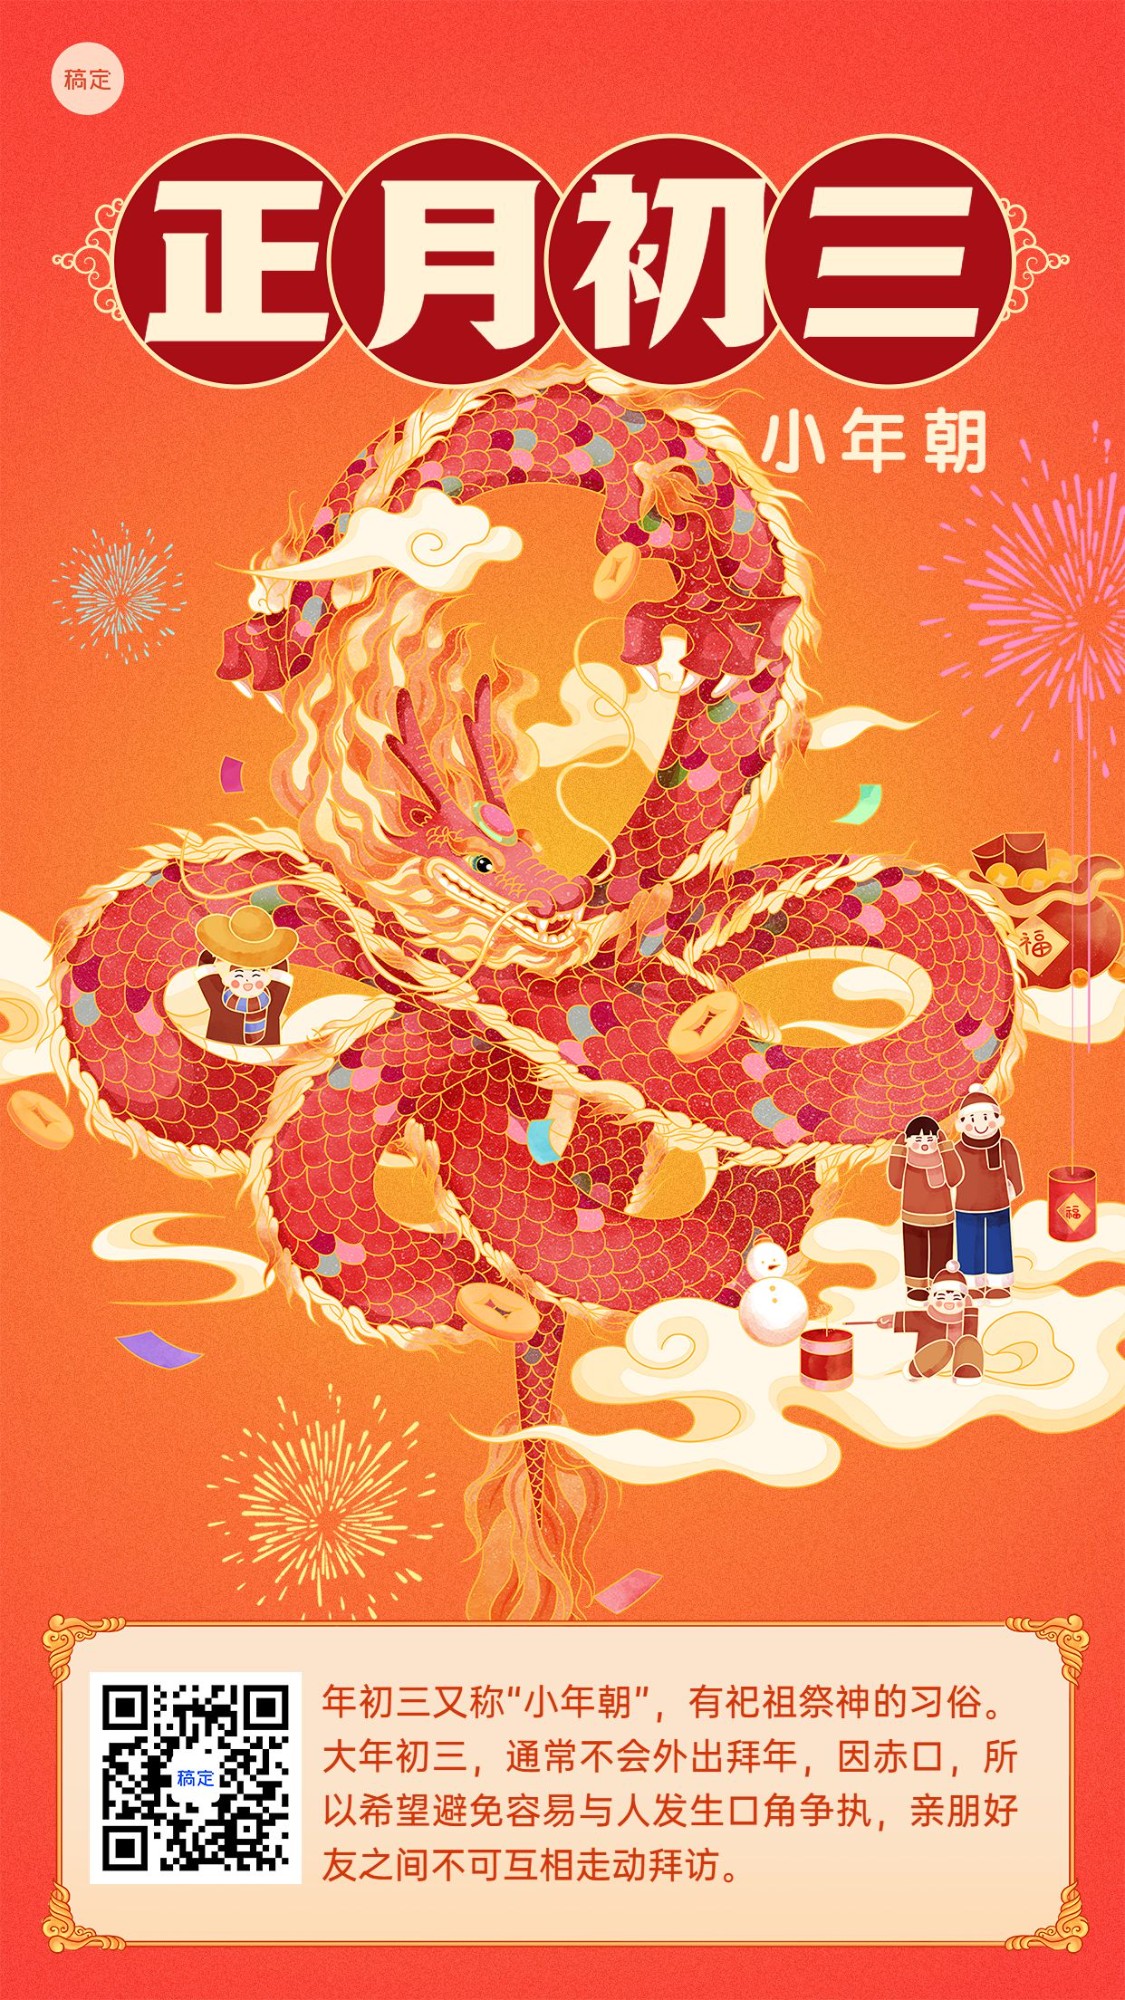 春节新年正月初三习俗科普手机海报预览效果